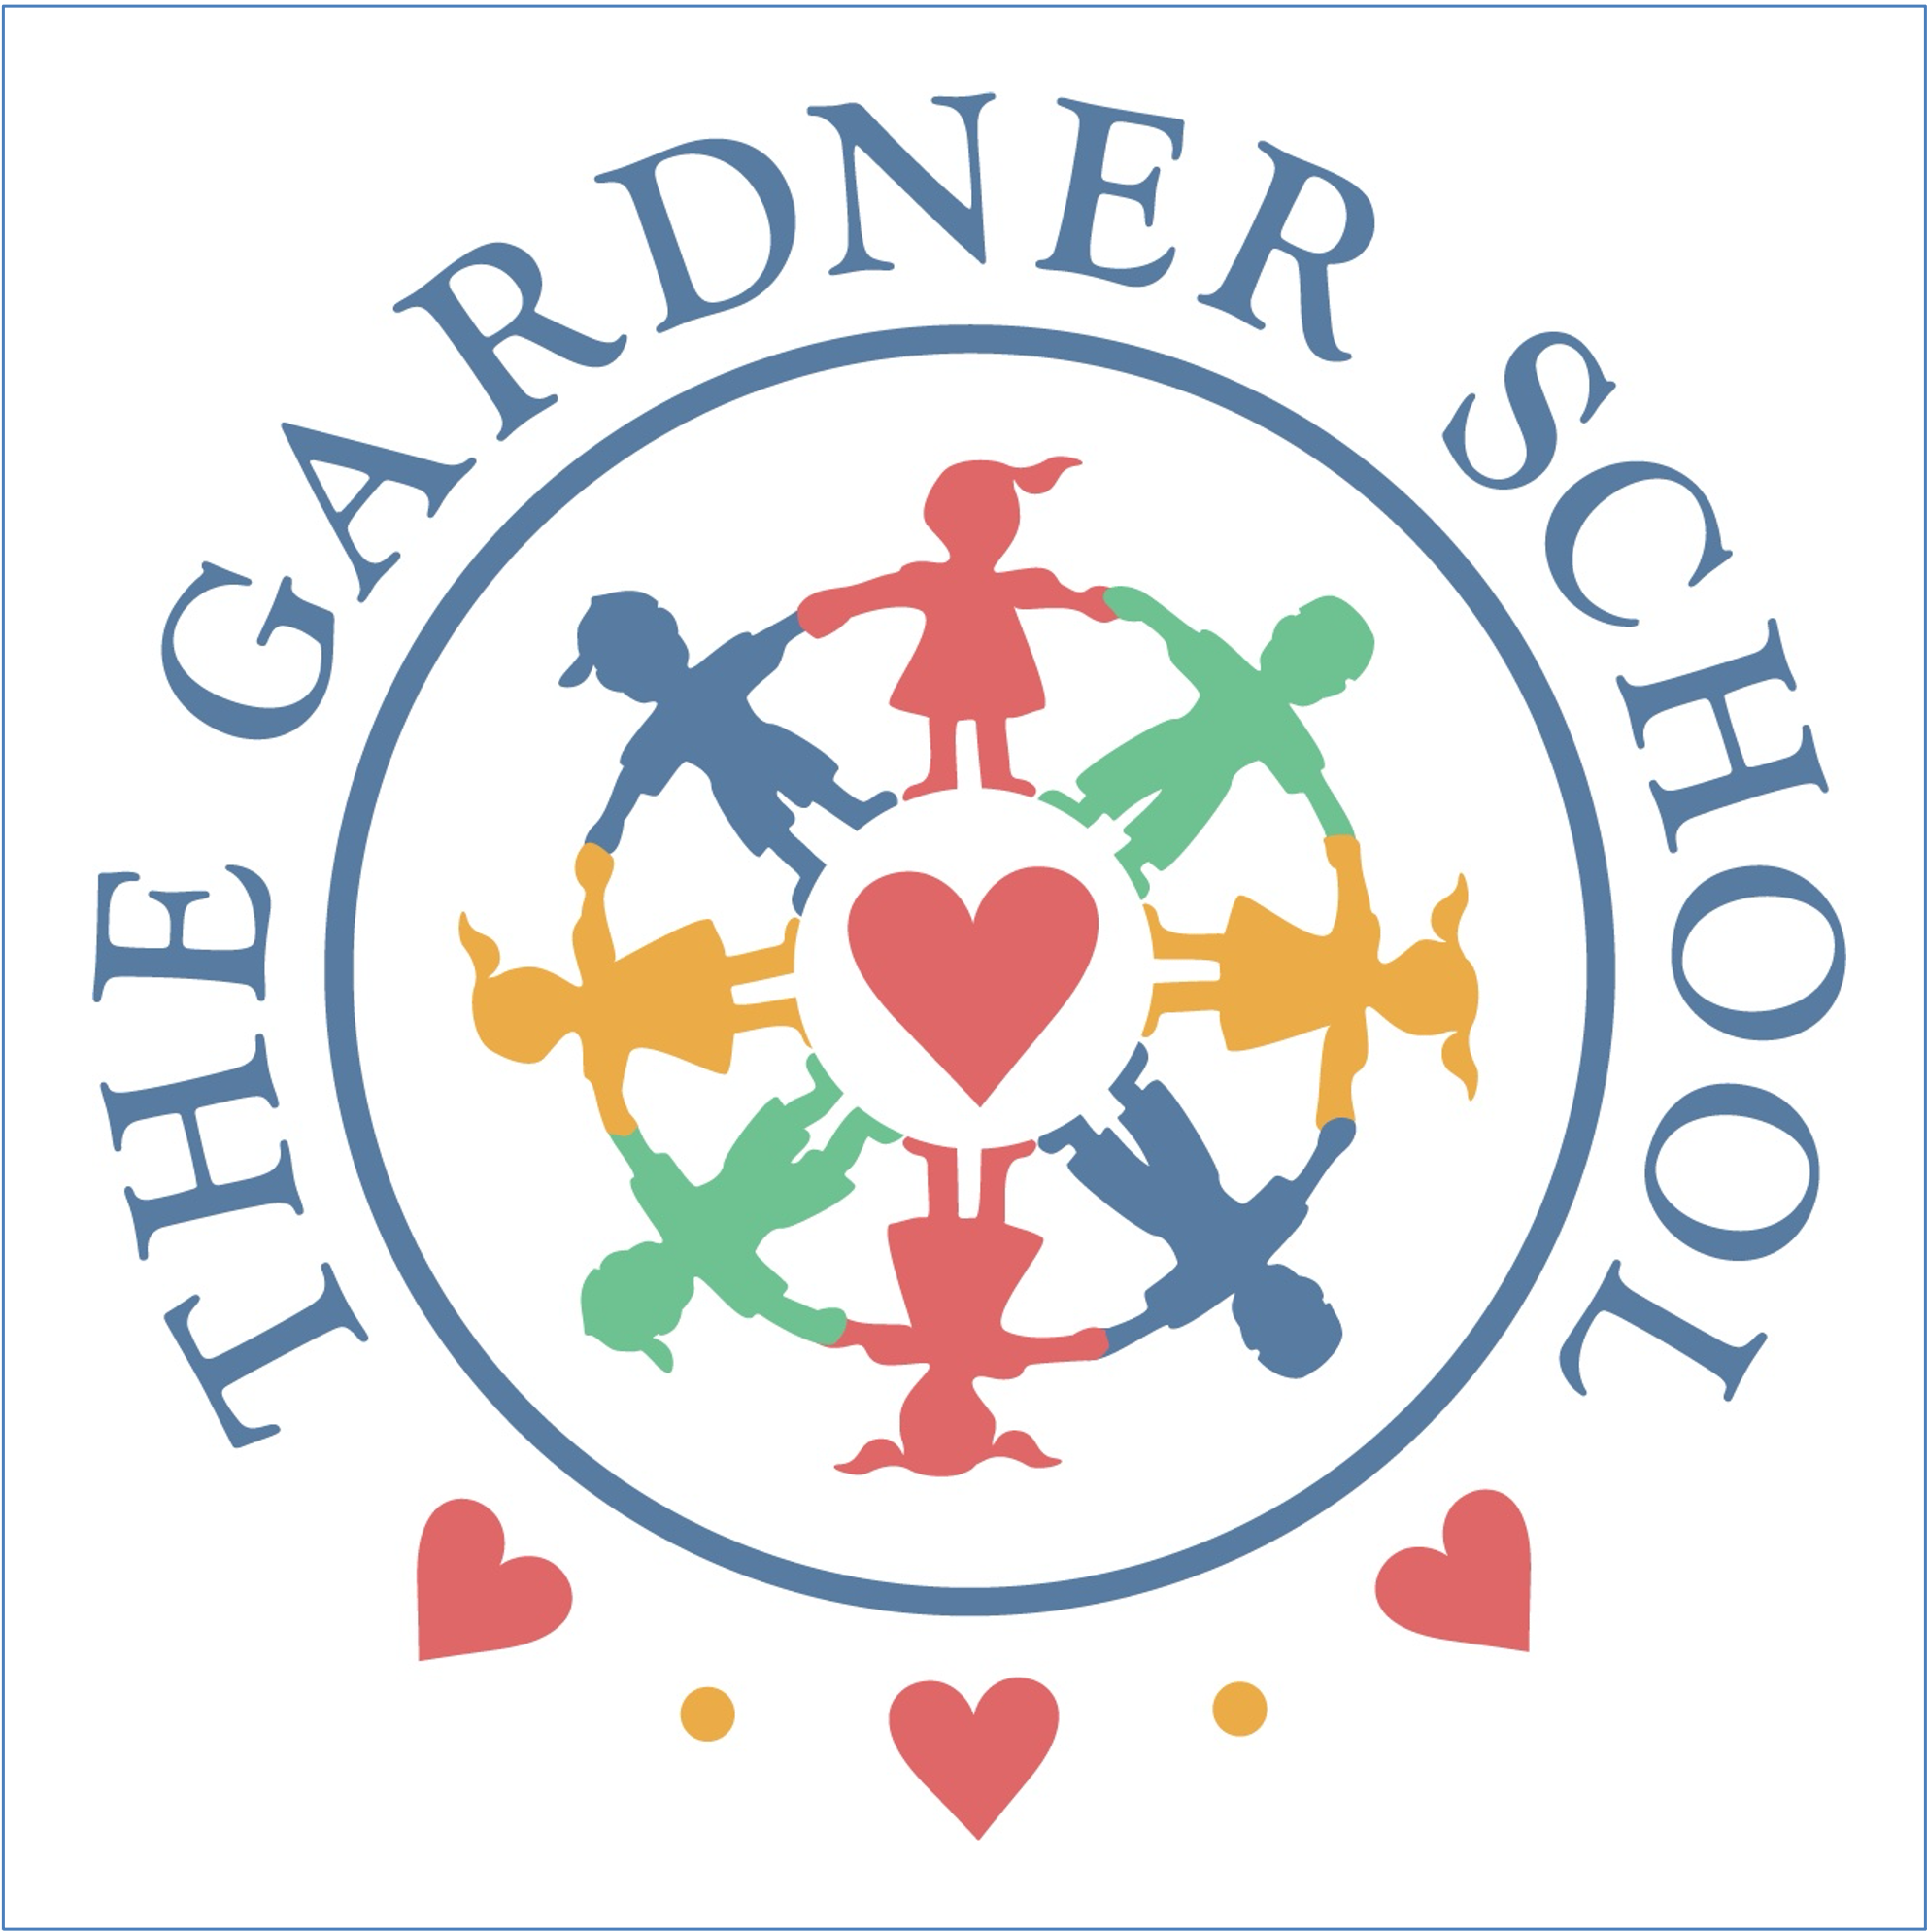 The Gardner School